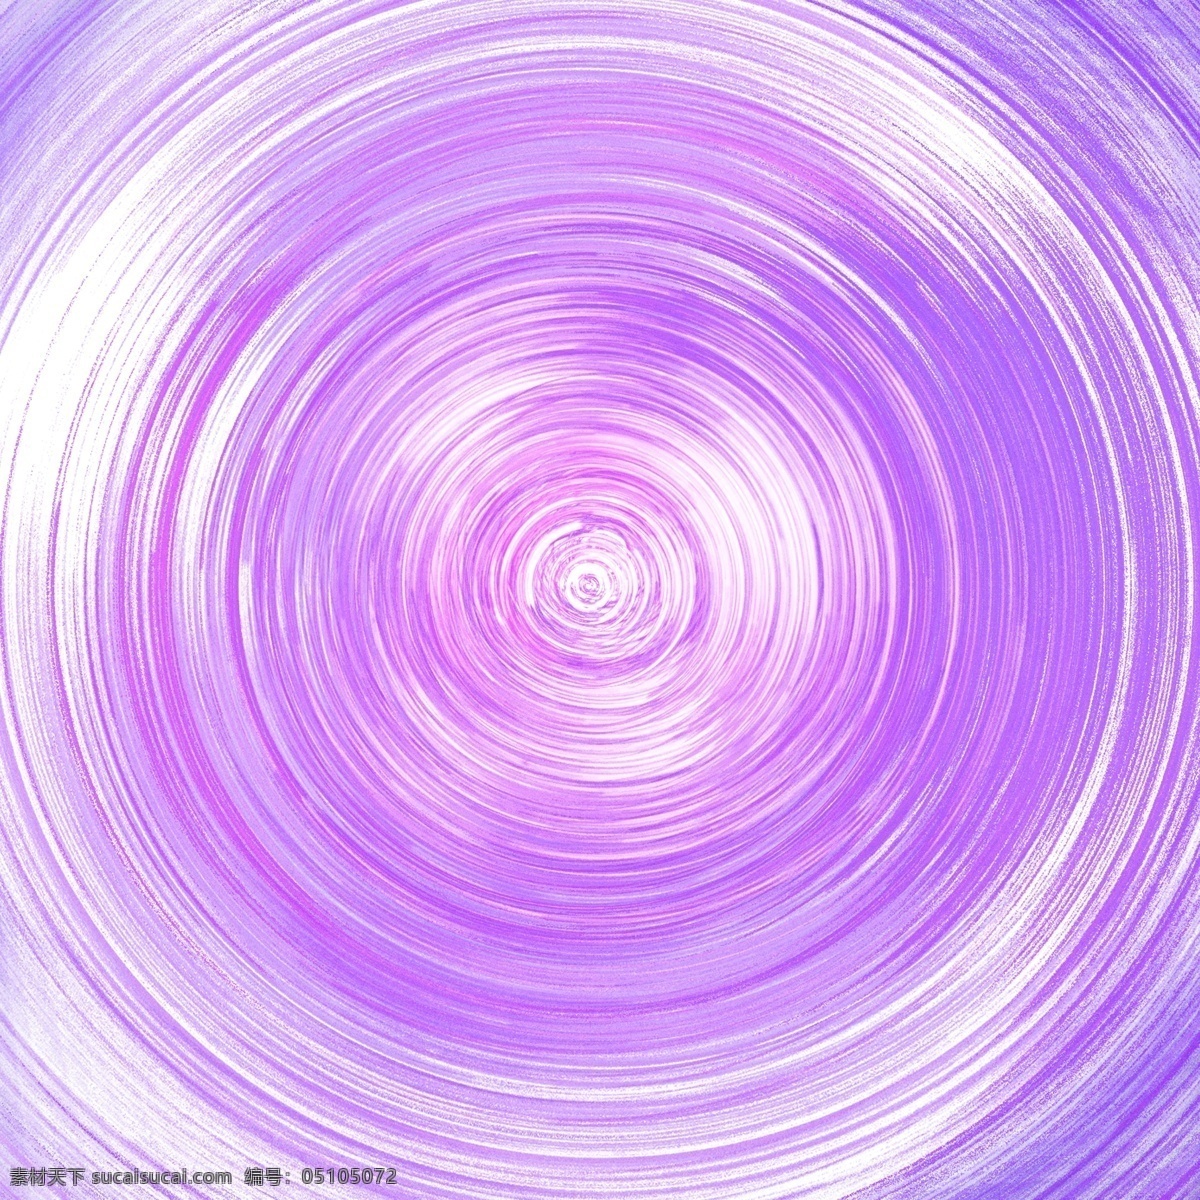 紫色 星 轨 渐变 环绕 元素 点状 星轨 创意 光泽 质感 中心 圆环 轨道 轨迹 科技 科幻